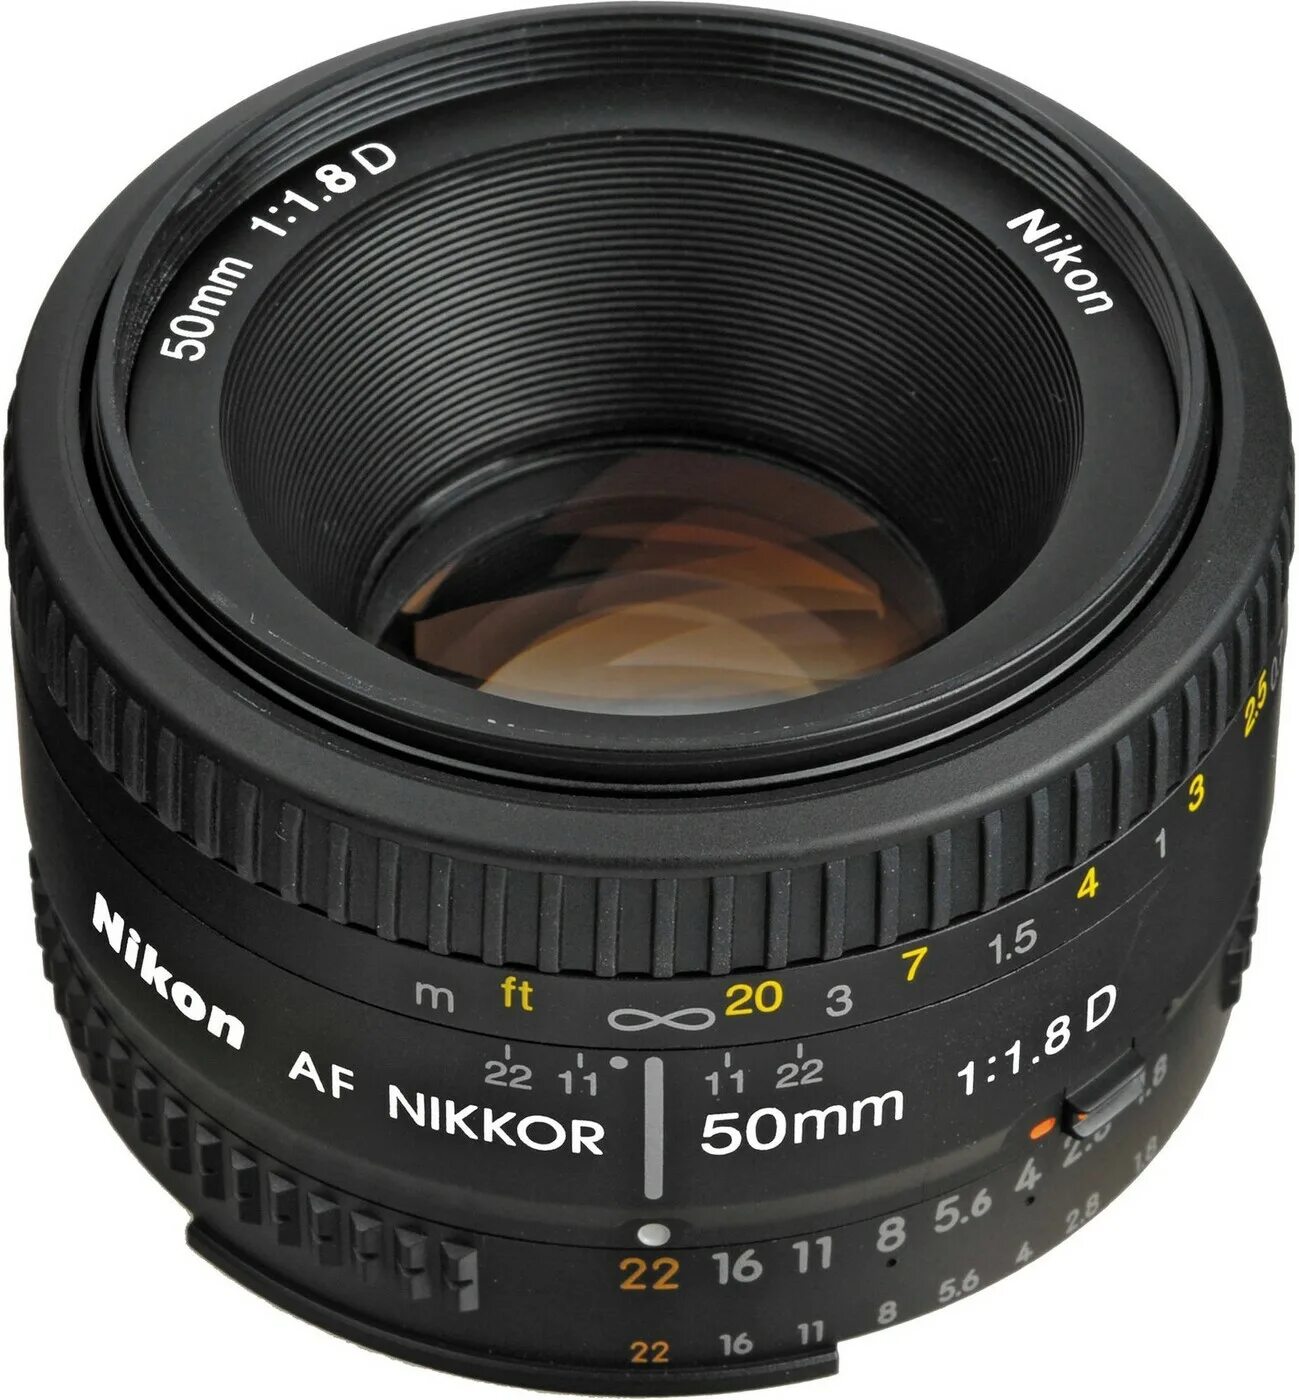 Объектив Nikon 50mm f/1.8d af Nikkor. Af Nikkor 50mm f/1.8d. Покупаю объективы